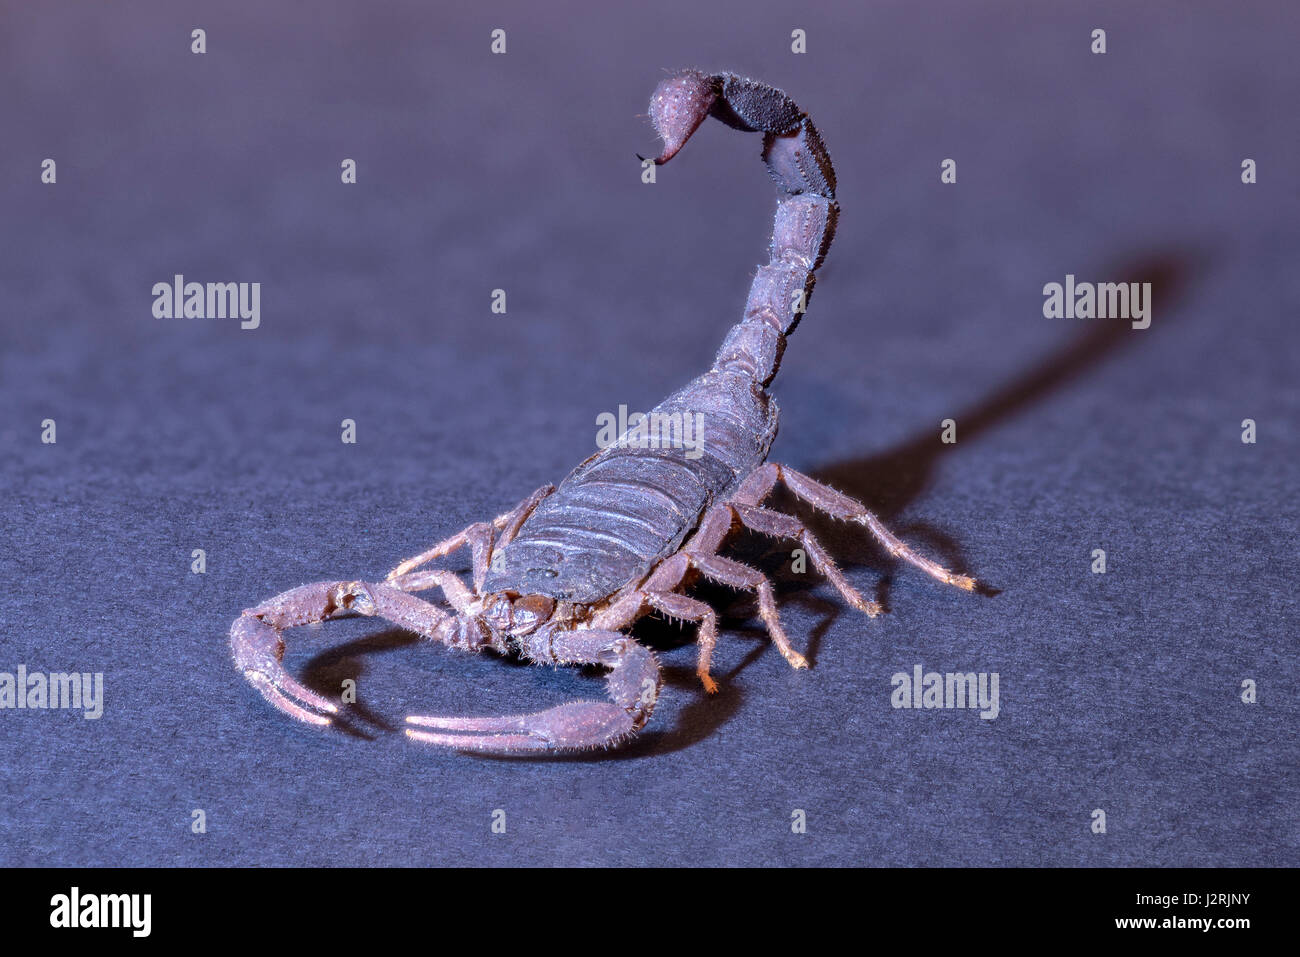 Madagaskar-Skorpion (Grosphus Ankarana) Probe, Stinger Rute bereit, zuzuschlagen, spot beleuchtet und isoliert gegen Studio-Hintergrund. Stockfoto